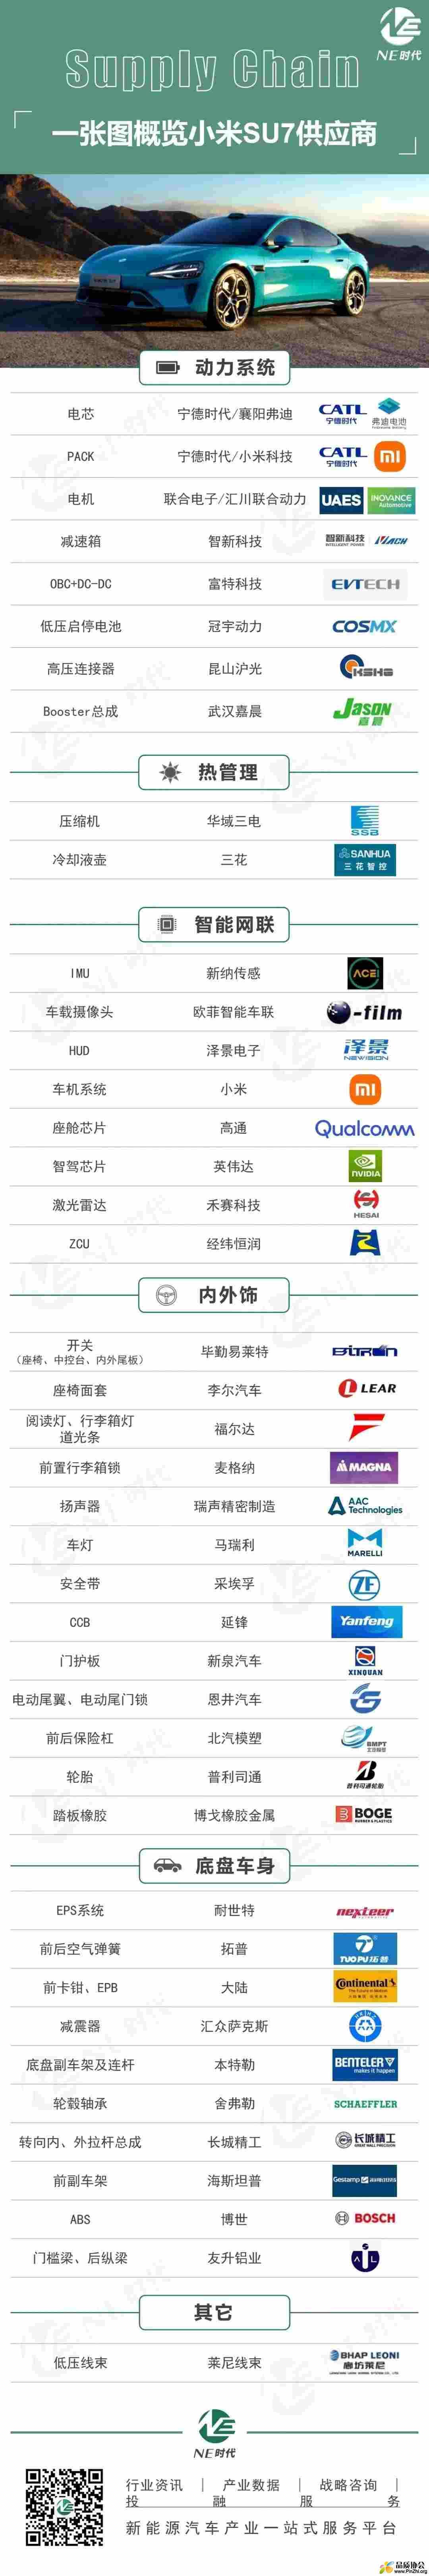 小米汽车SU7的供应商清单.jpg